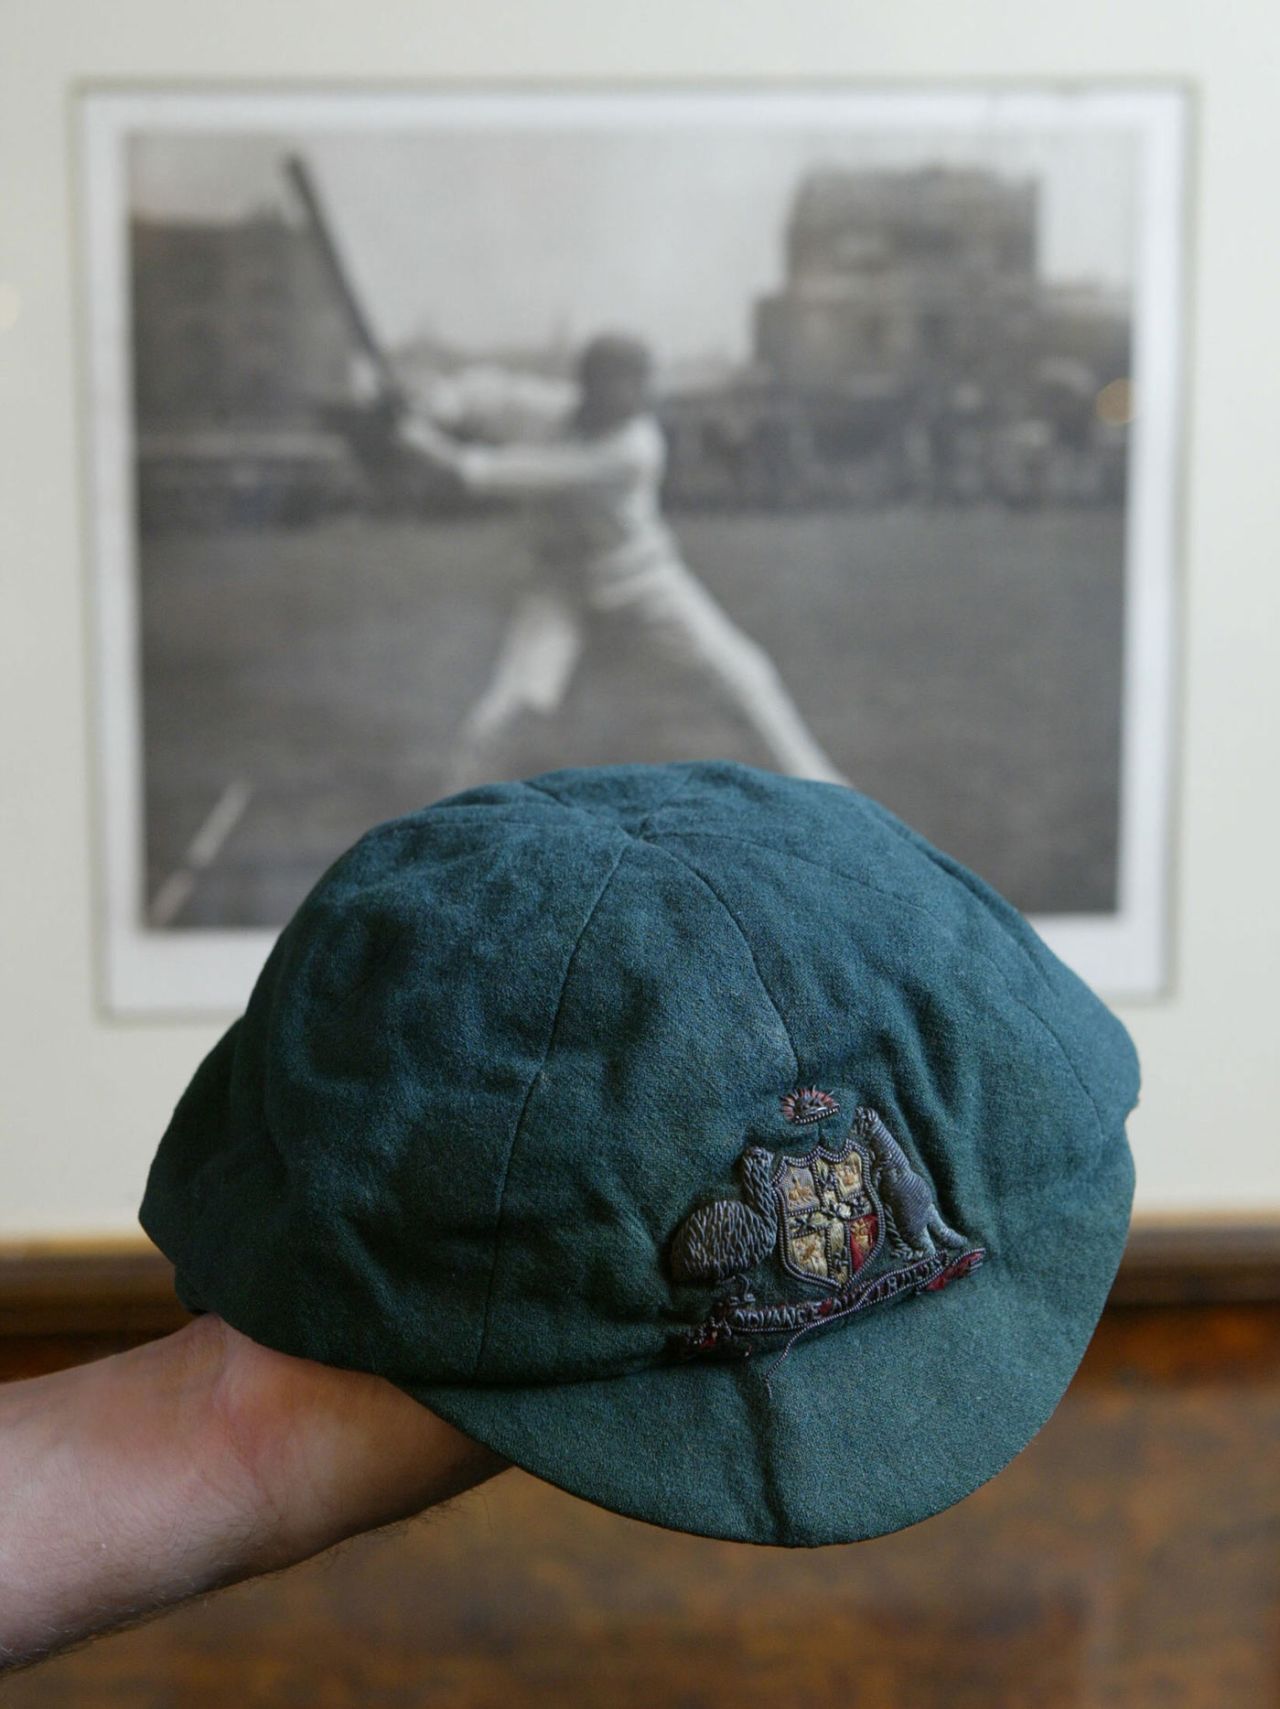 Victor Trumper's cap at auction, October 7, 2004